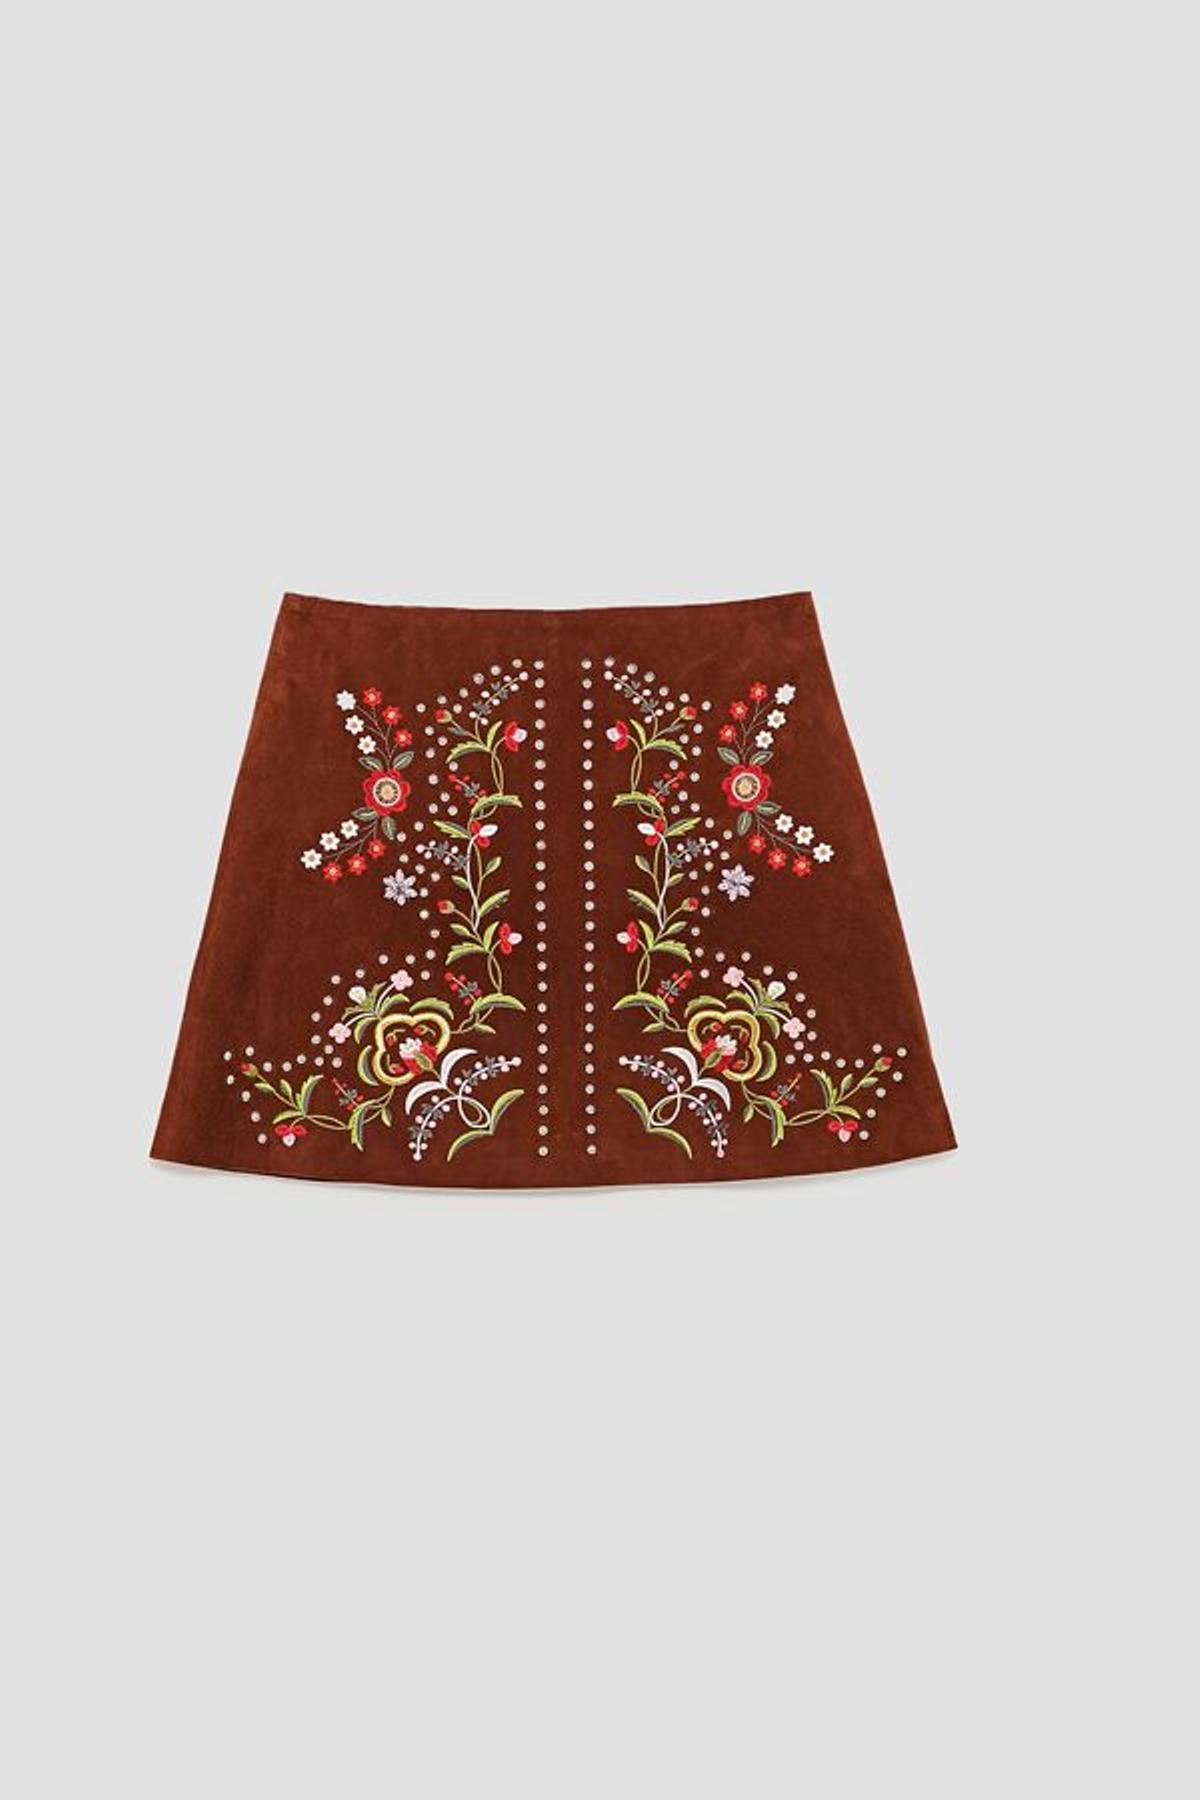 Nuevo en tienda: mini falda de ante de Zara